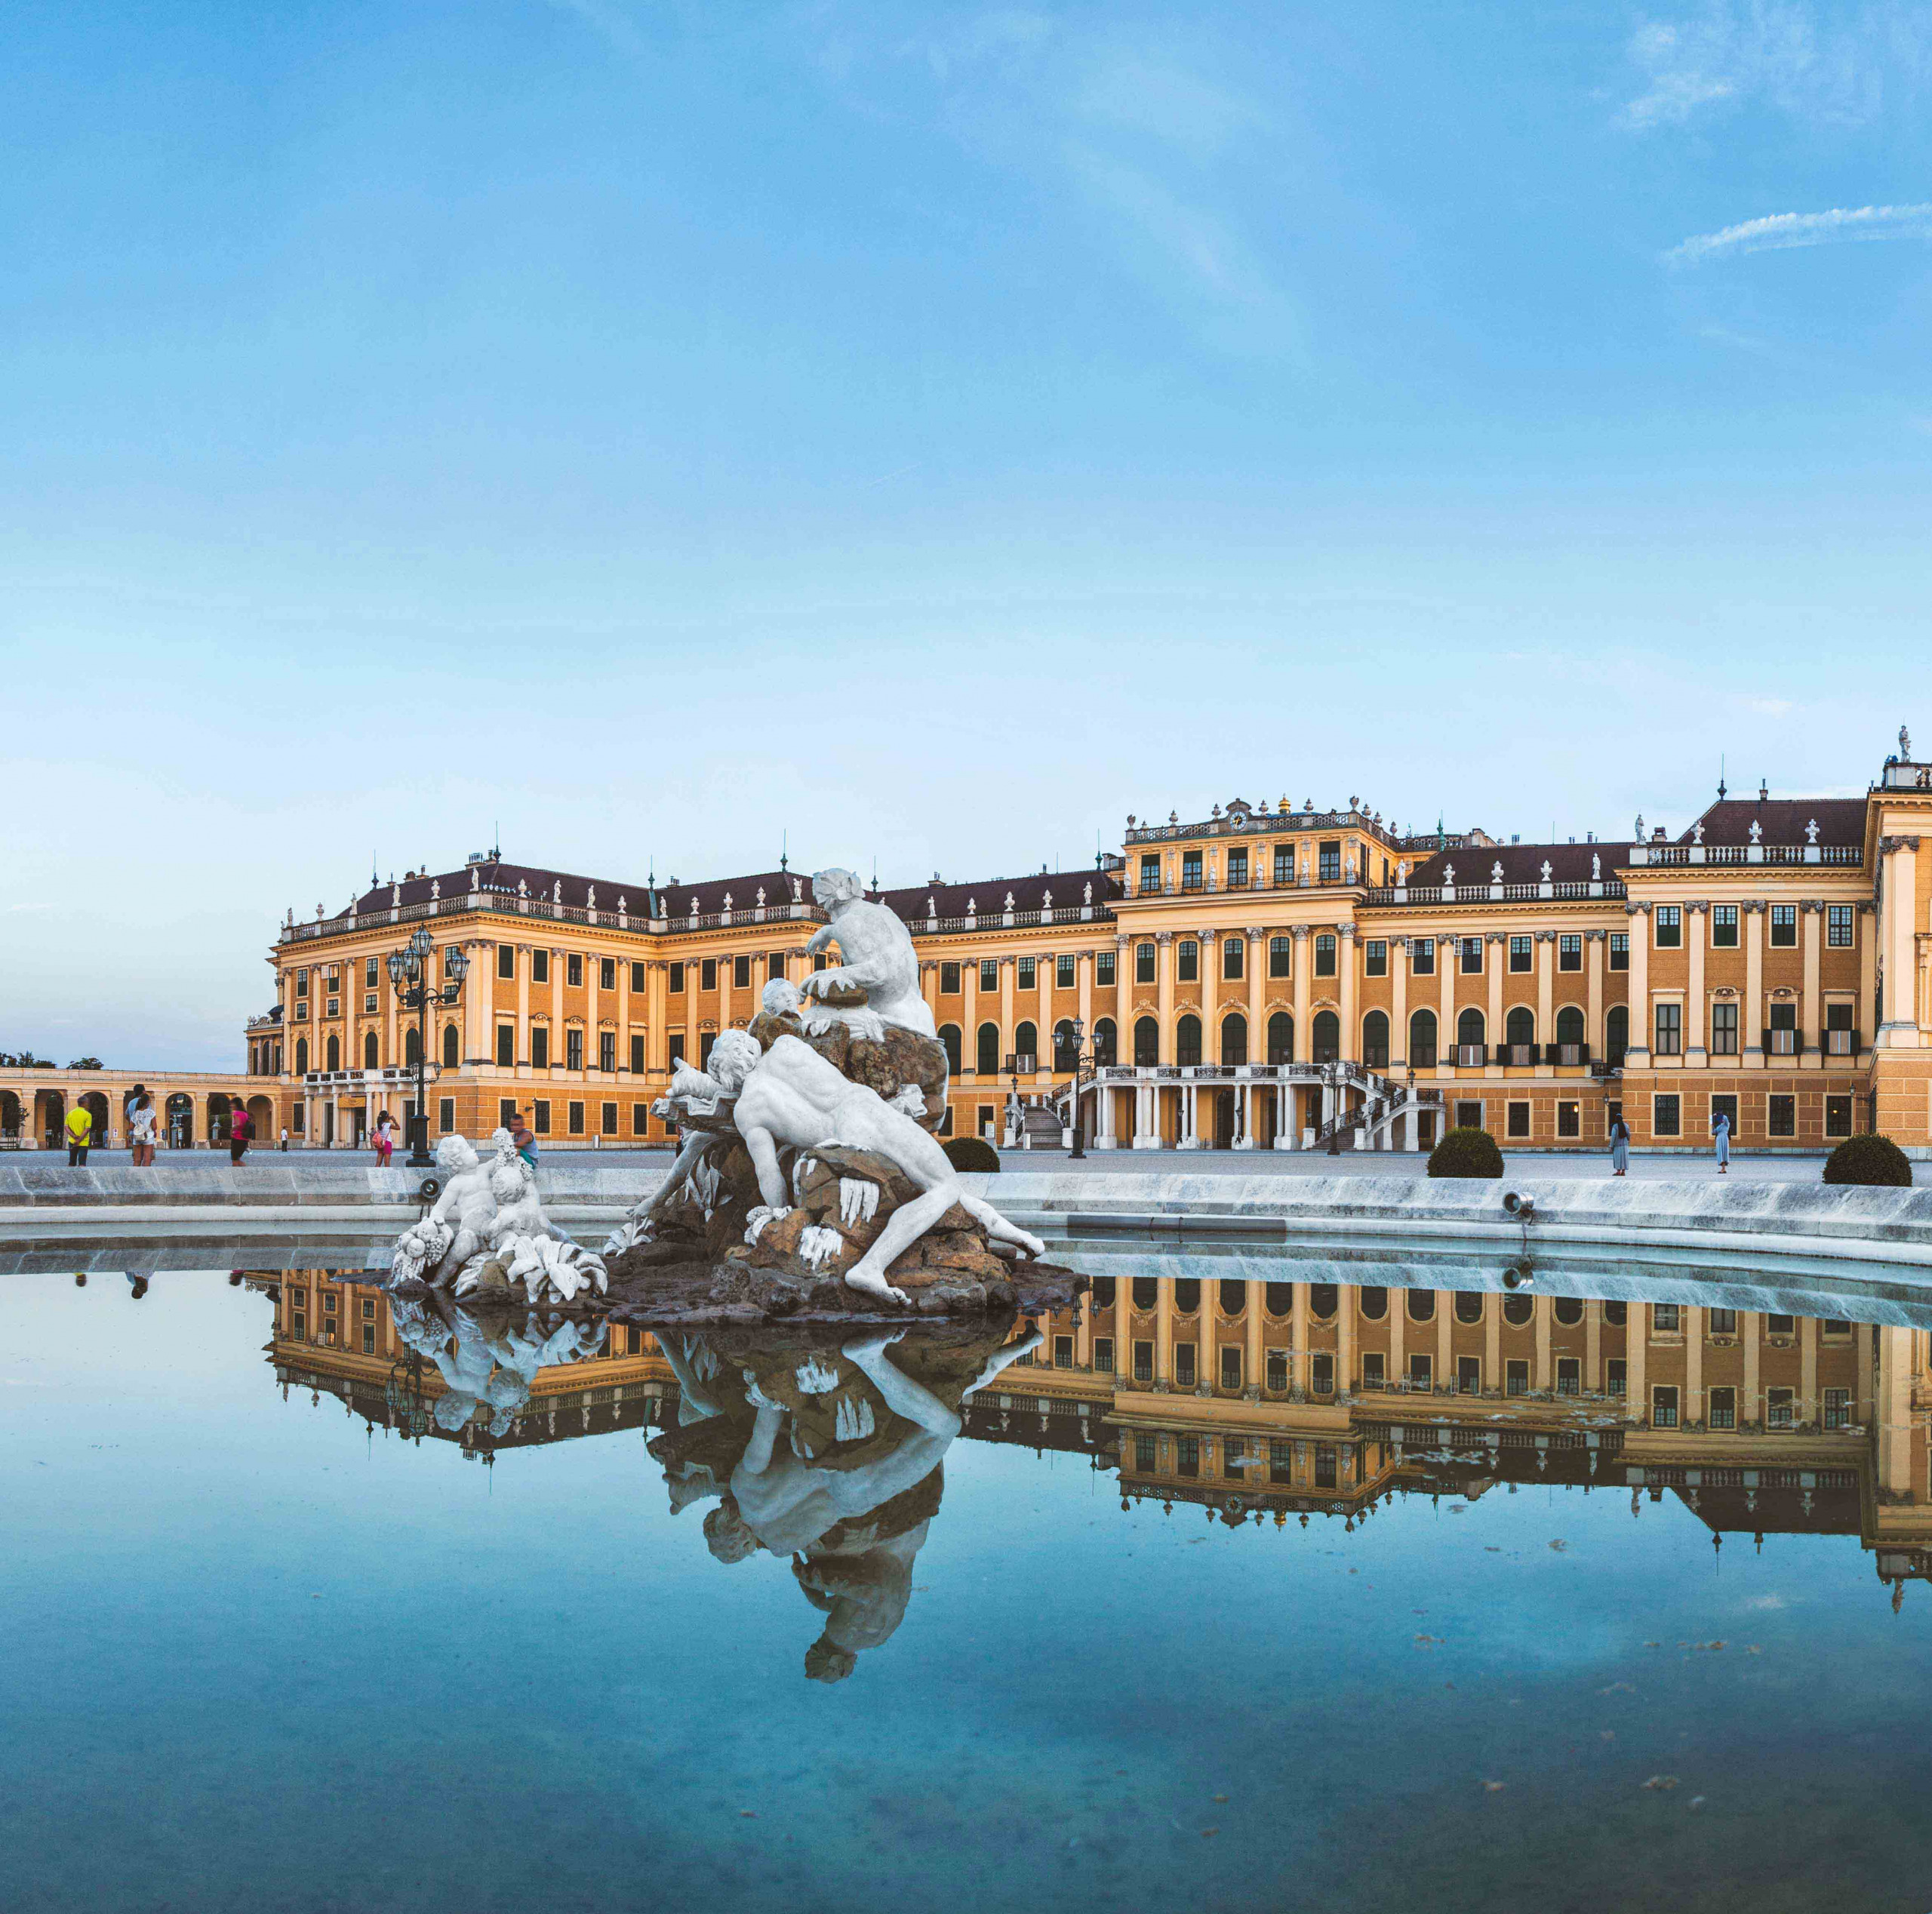 Schonbrunn Palace in Vienna, Austria